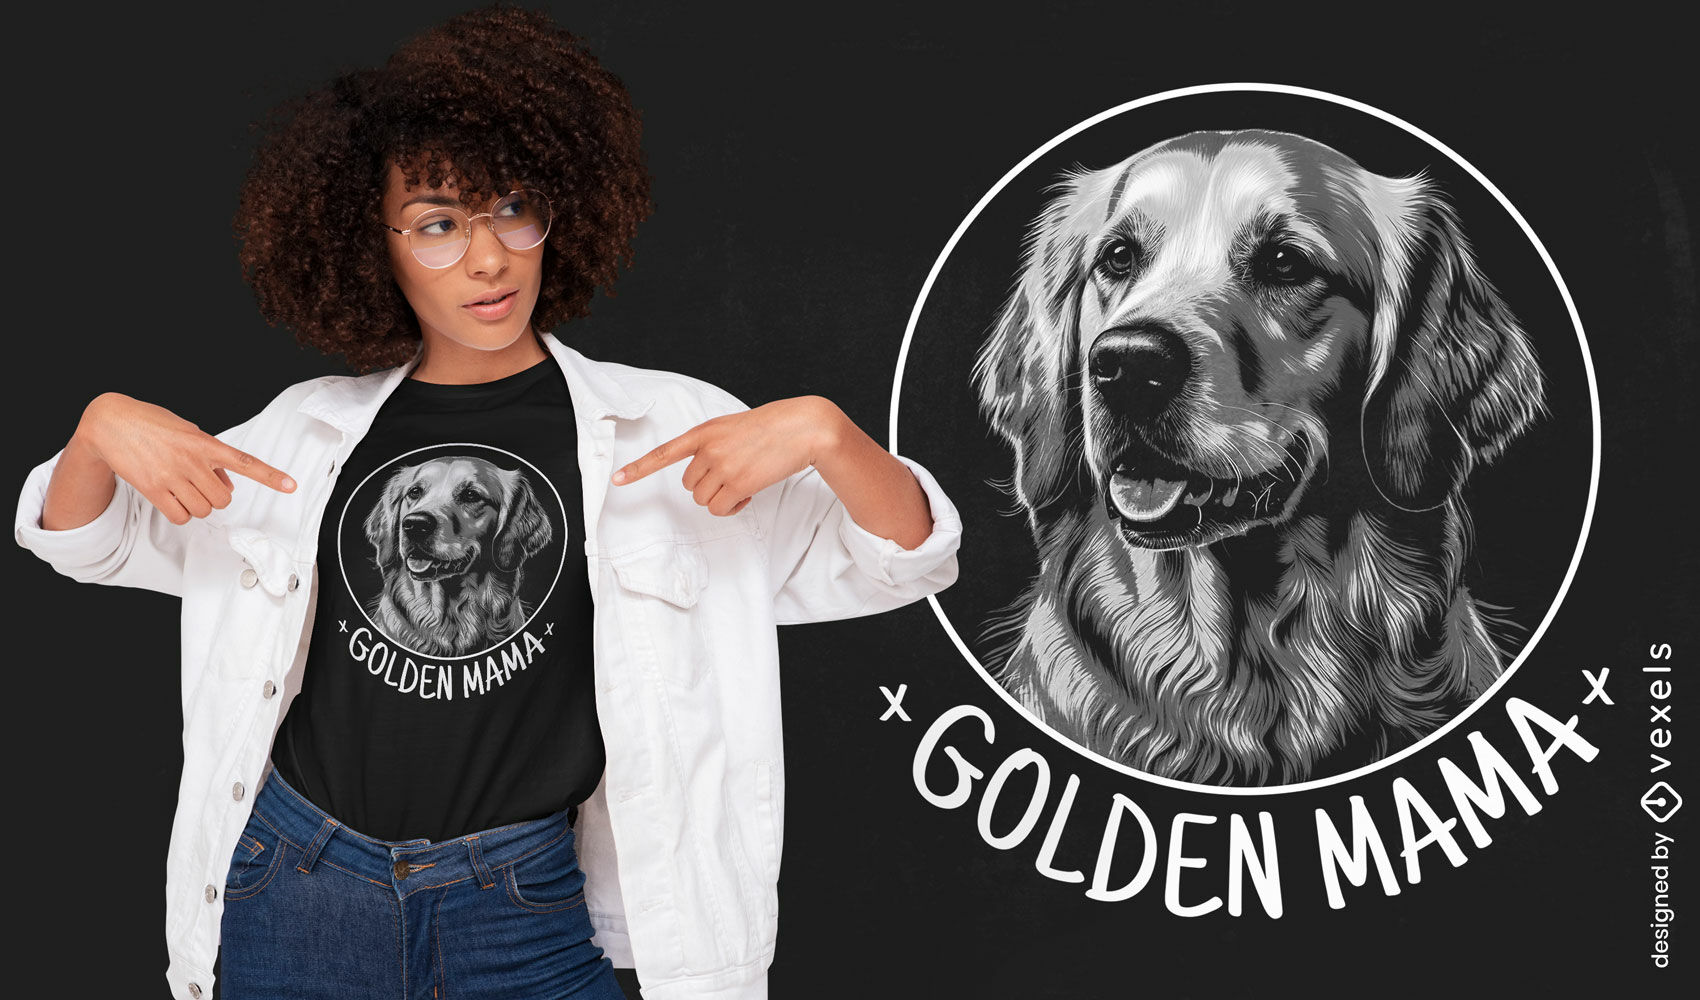 Golden retriever mom t-shirt design